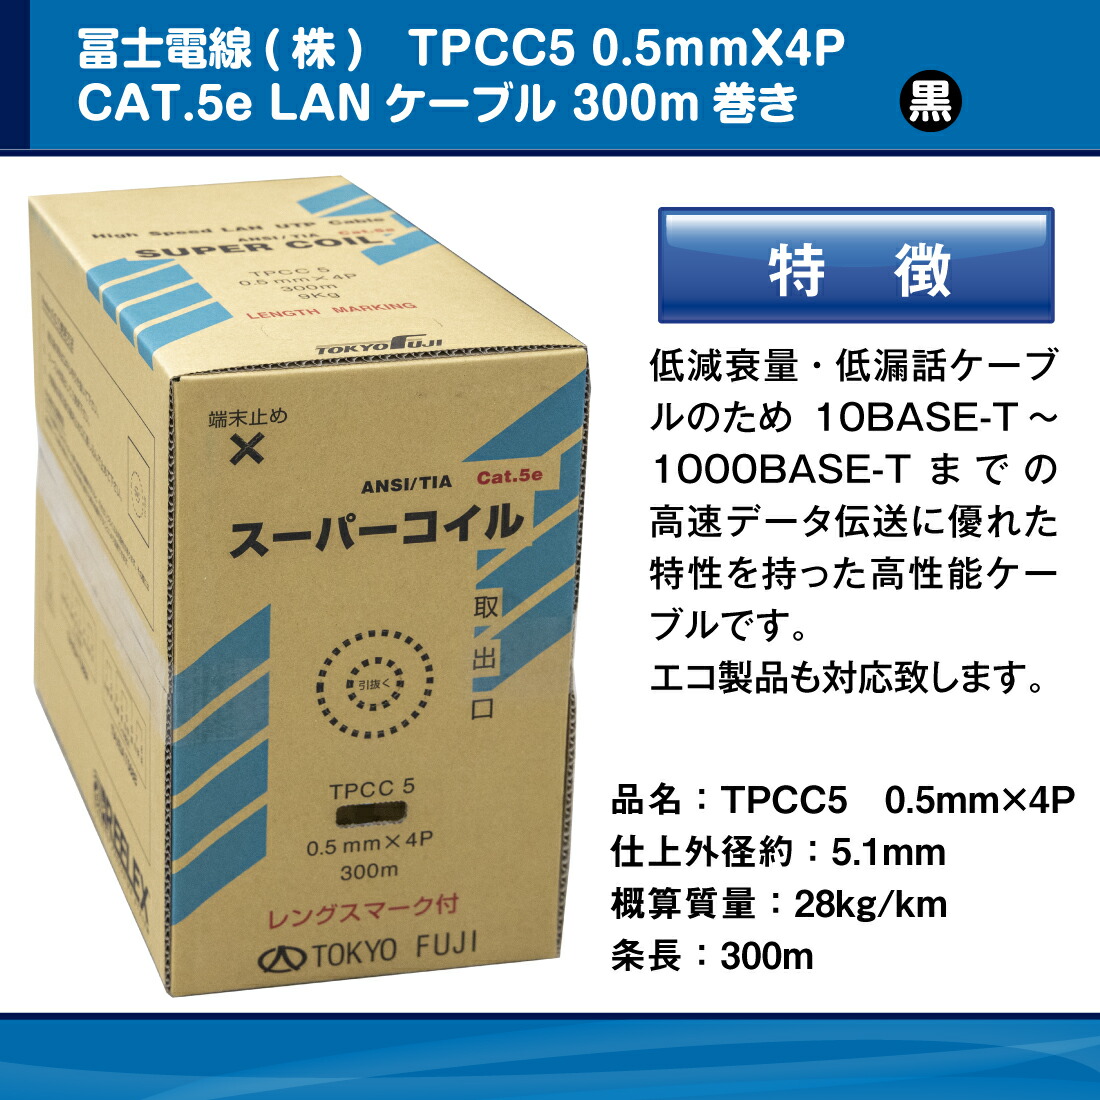 冨士電線 TPCC5 0.5mm×4P レングスマーク付 スーパーコイル 黒/ブラック Cat.5e 300m フジ